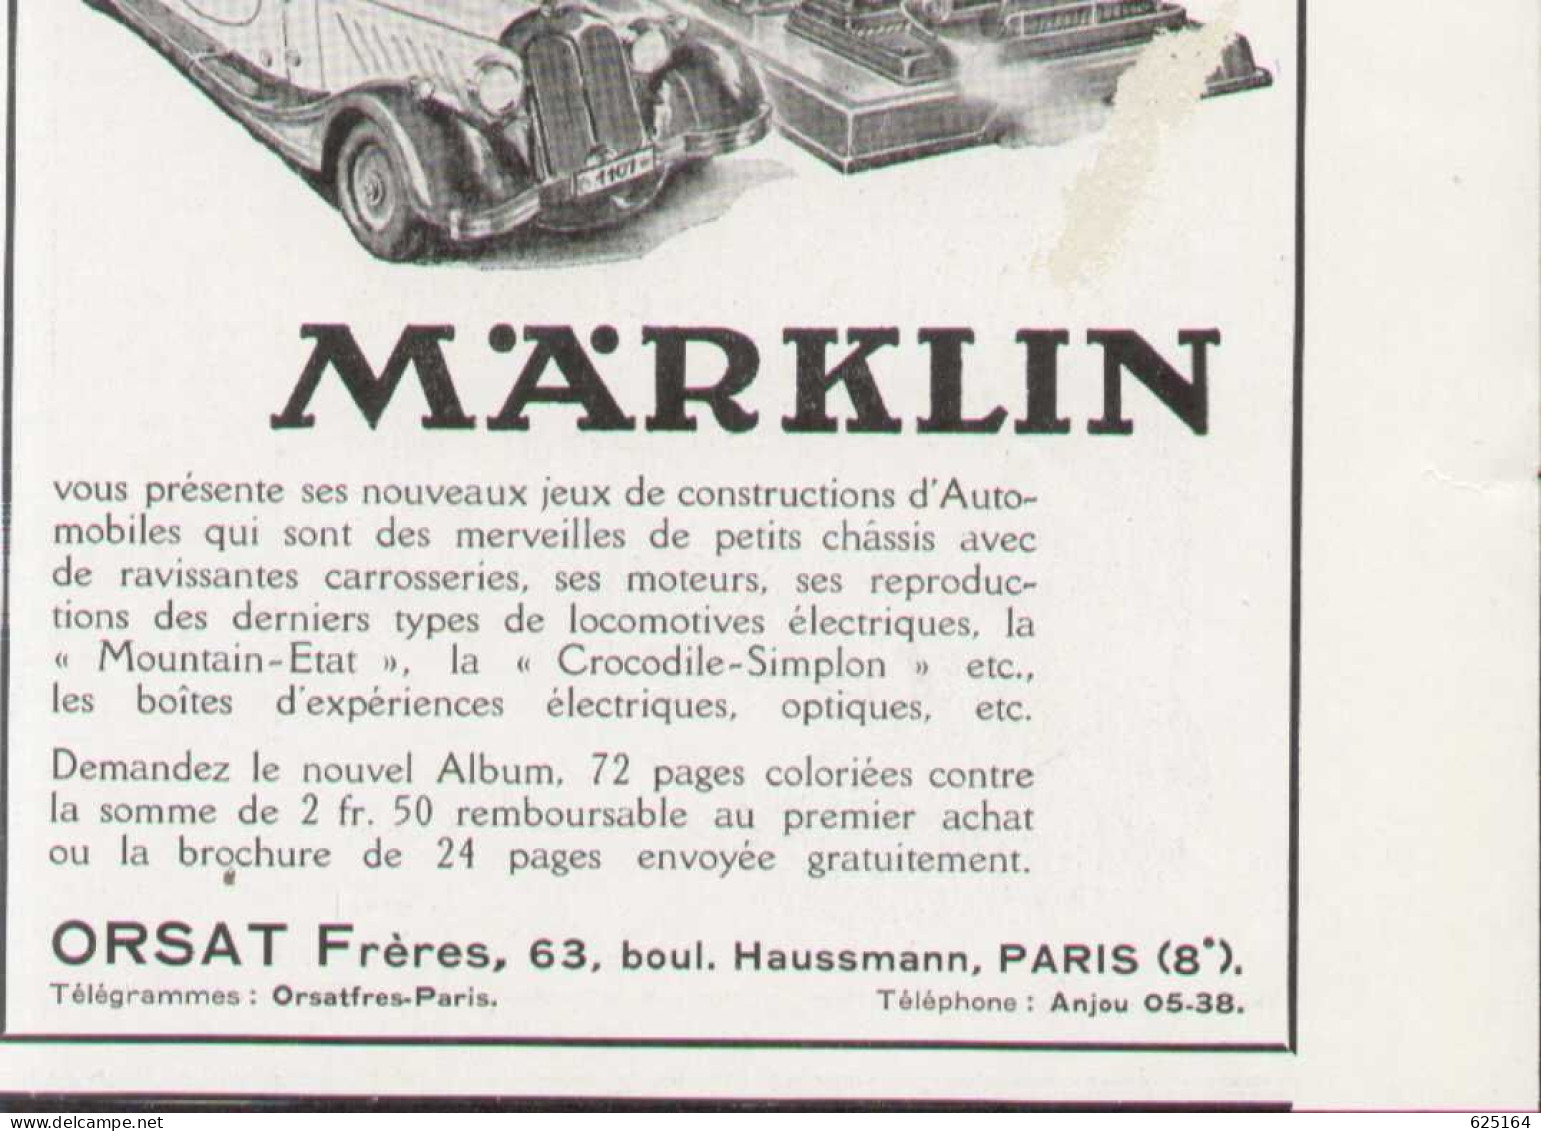 MÄRKLIN PUBLICITÉ ORSAT FRÈRES Feuille Publicitaire D'un Magazine Des Années 1930 - French